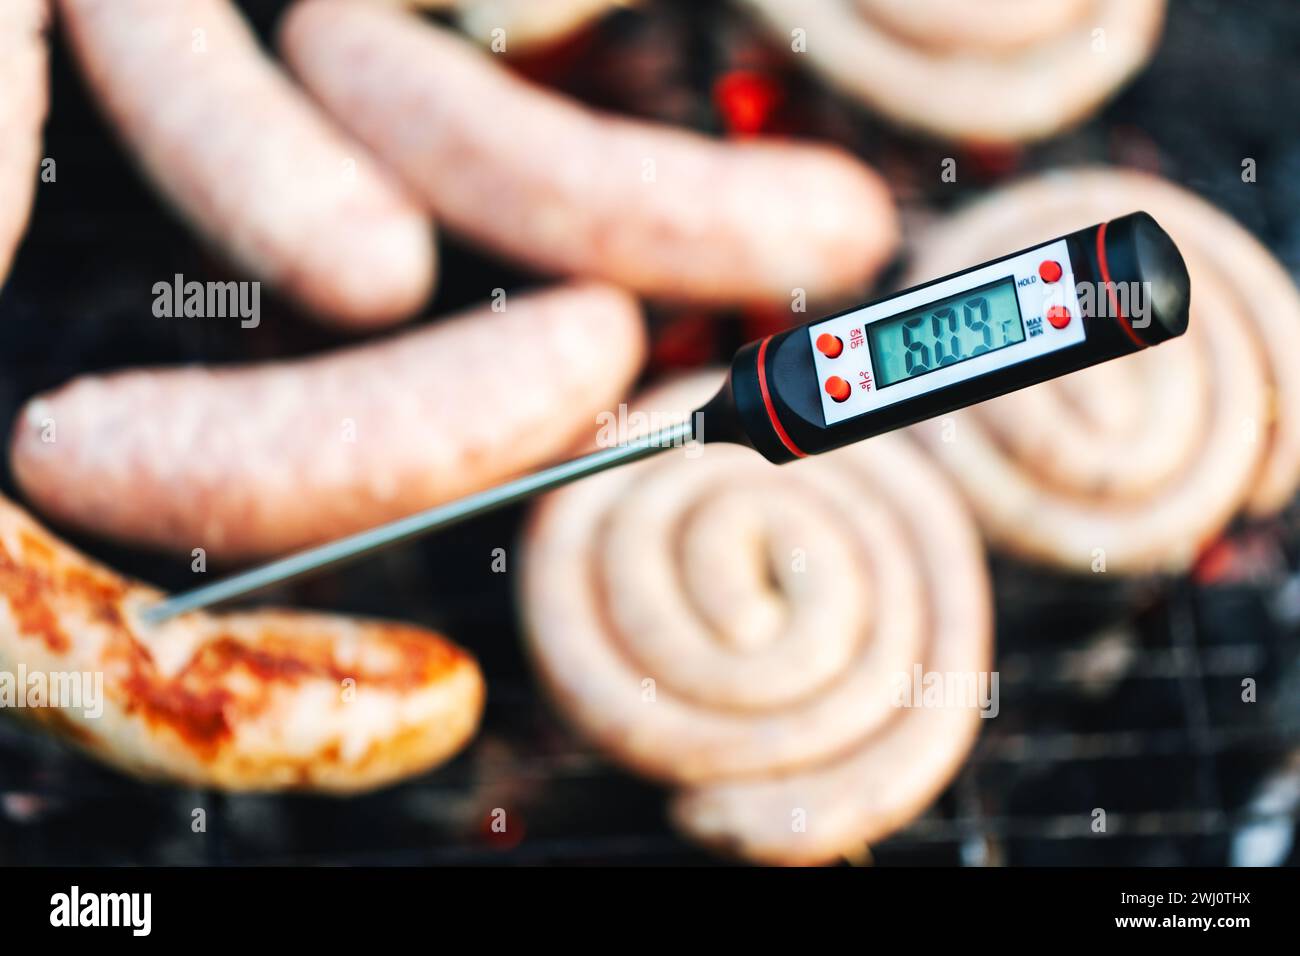 Primo piano di un termometro digitale per la carne che visualizza la temperatura al di sotto della soglia di cottura sicura per le salsicce grigliate, segnalando una potenziale guarigione Foto Stock